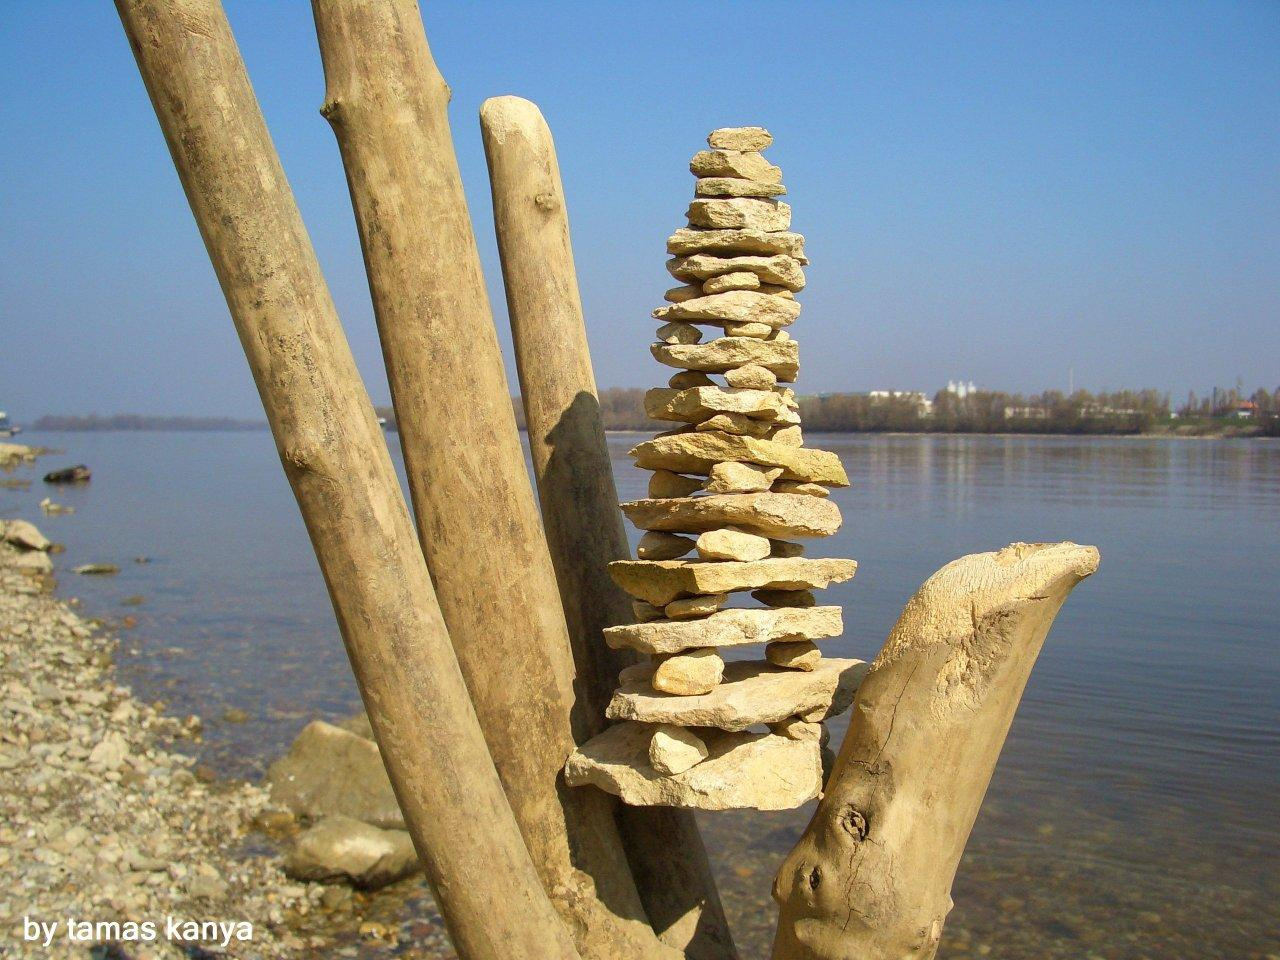 driftwood hand and stone "pagoda"by tamas kanya